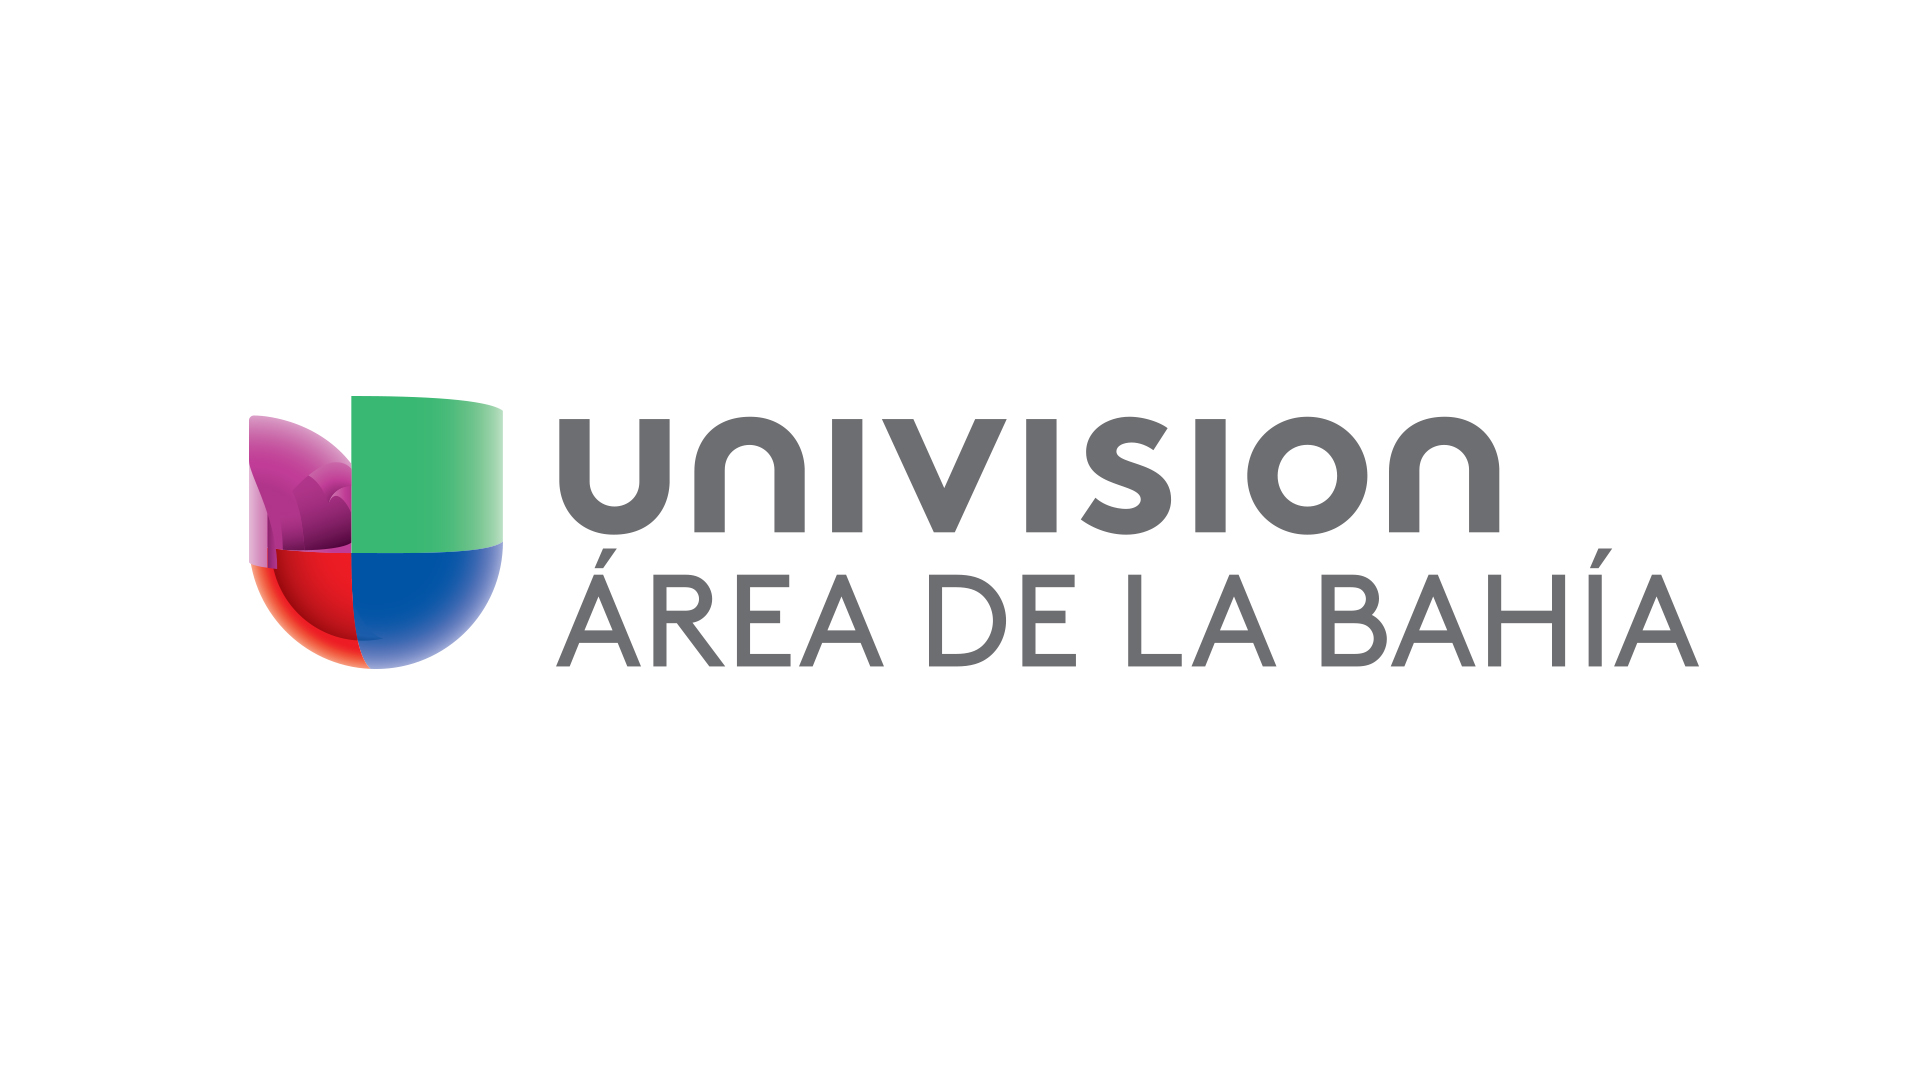 Univision Área de La Bahía logo.jpg